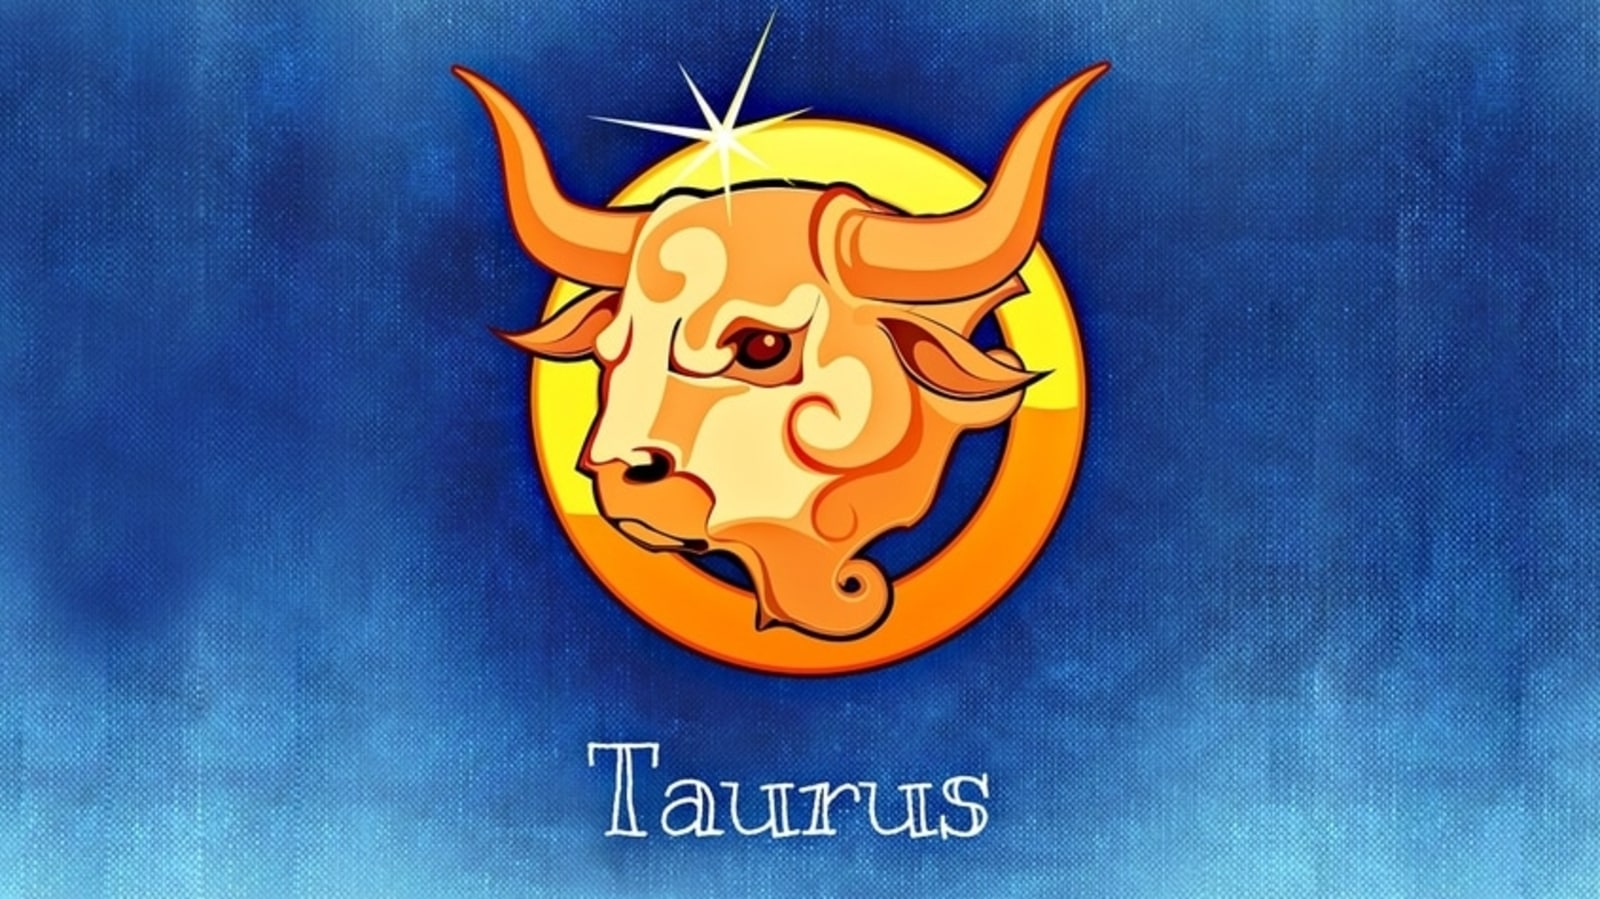 taurus free daily horoscope